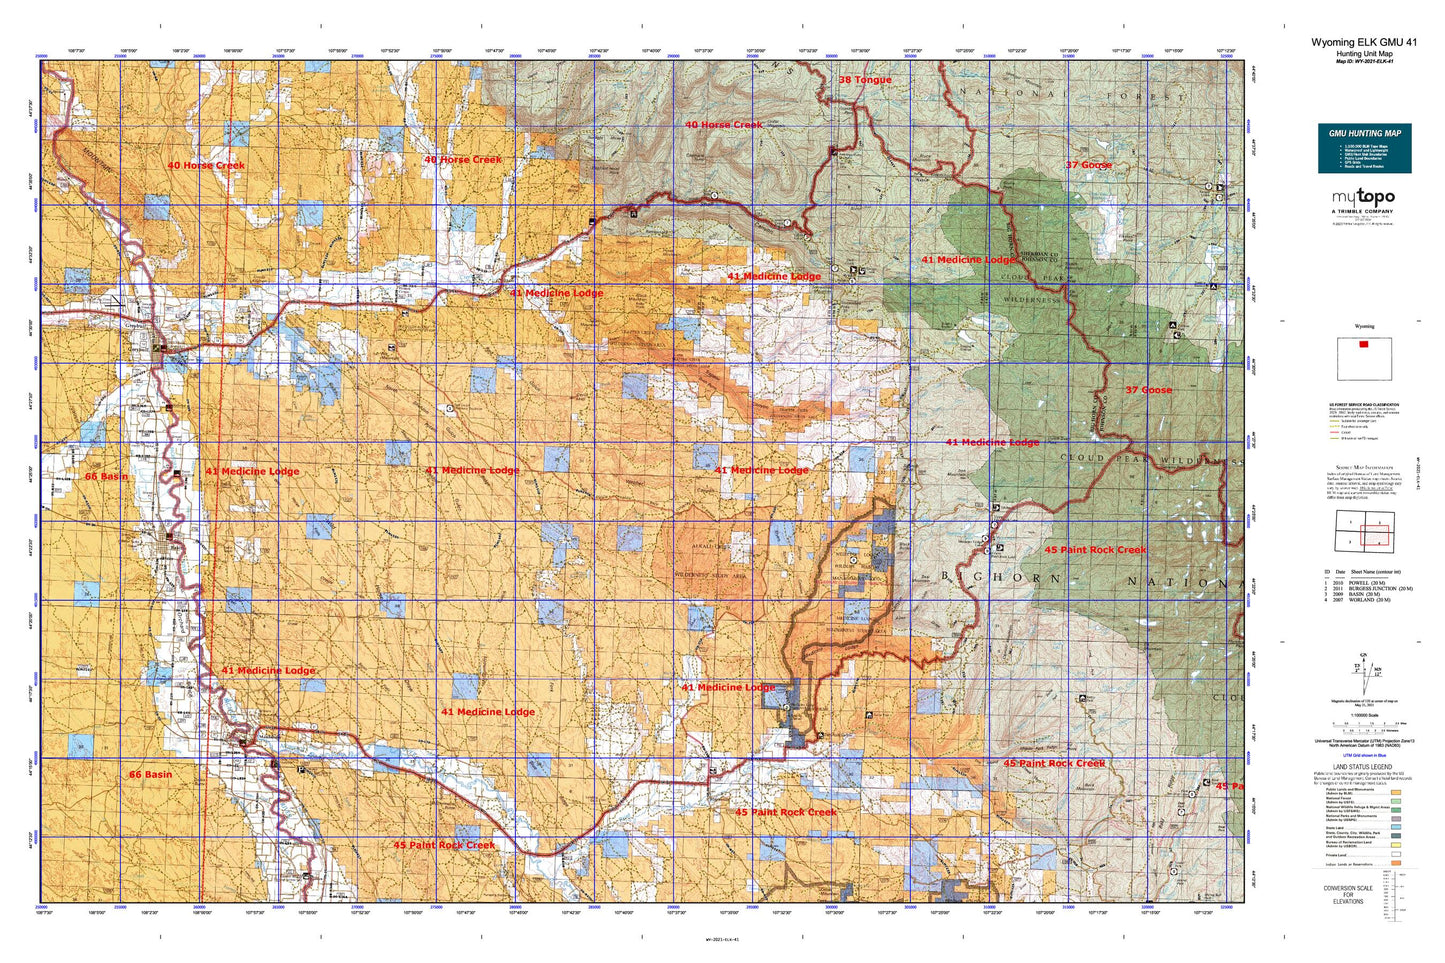 Wyoming Elk GMU 41 Map Image